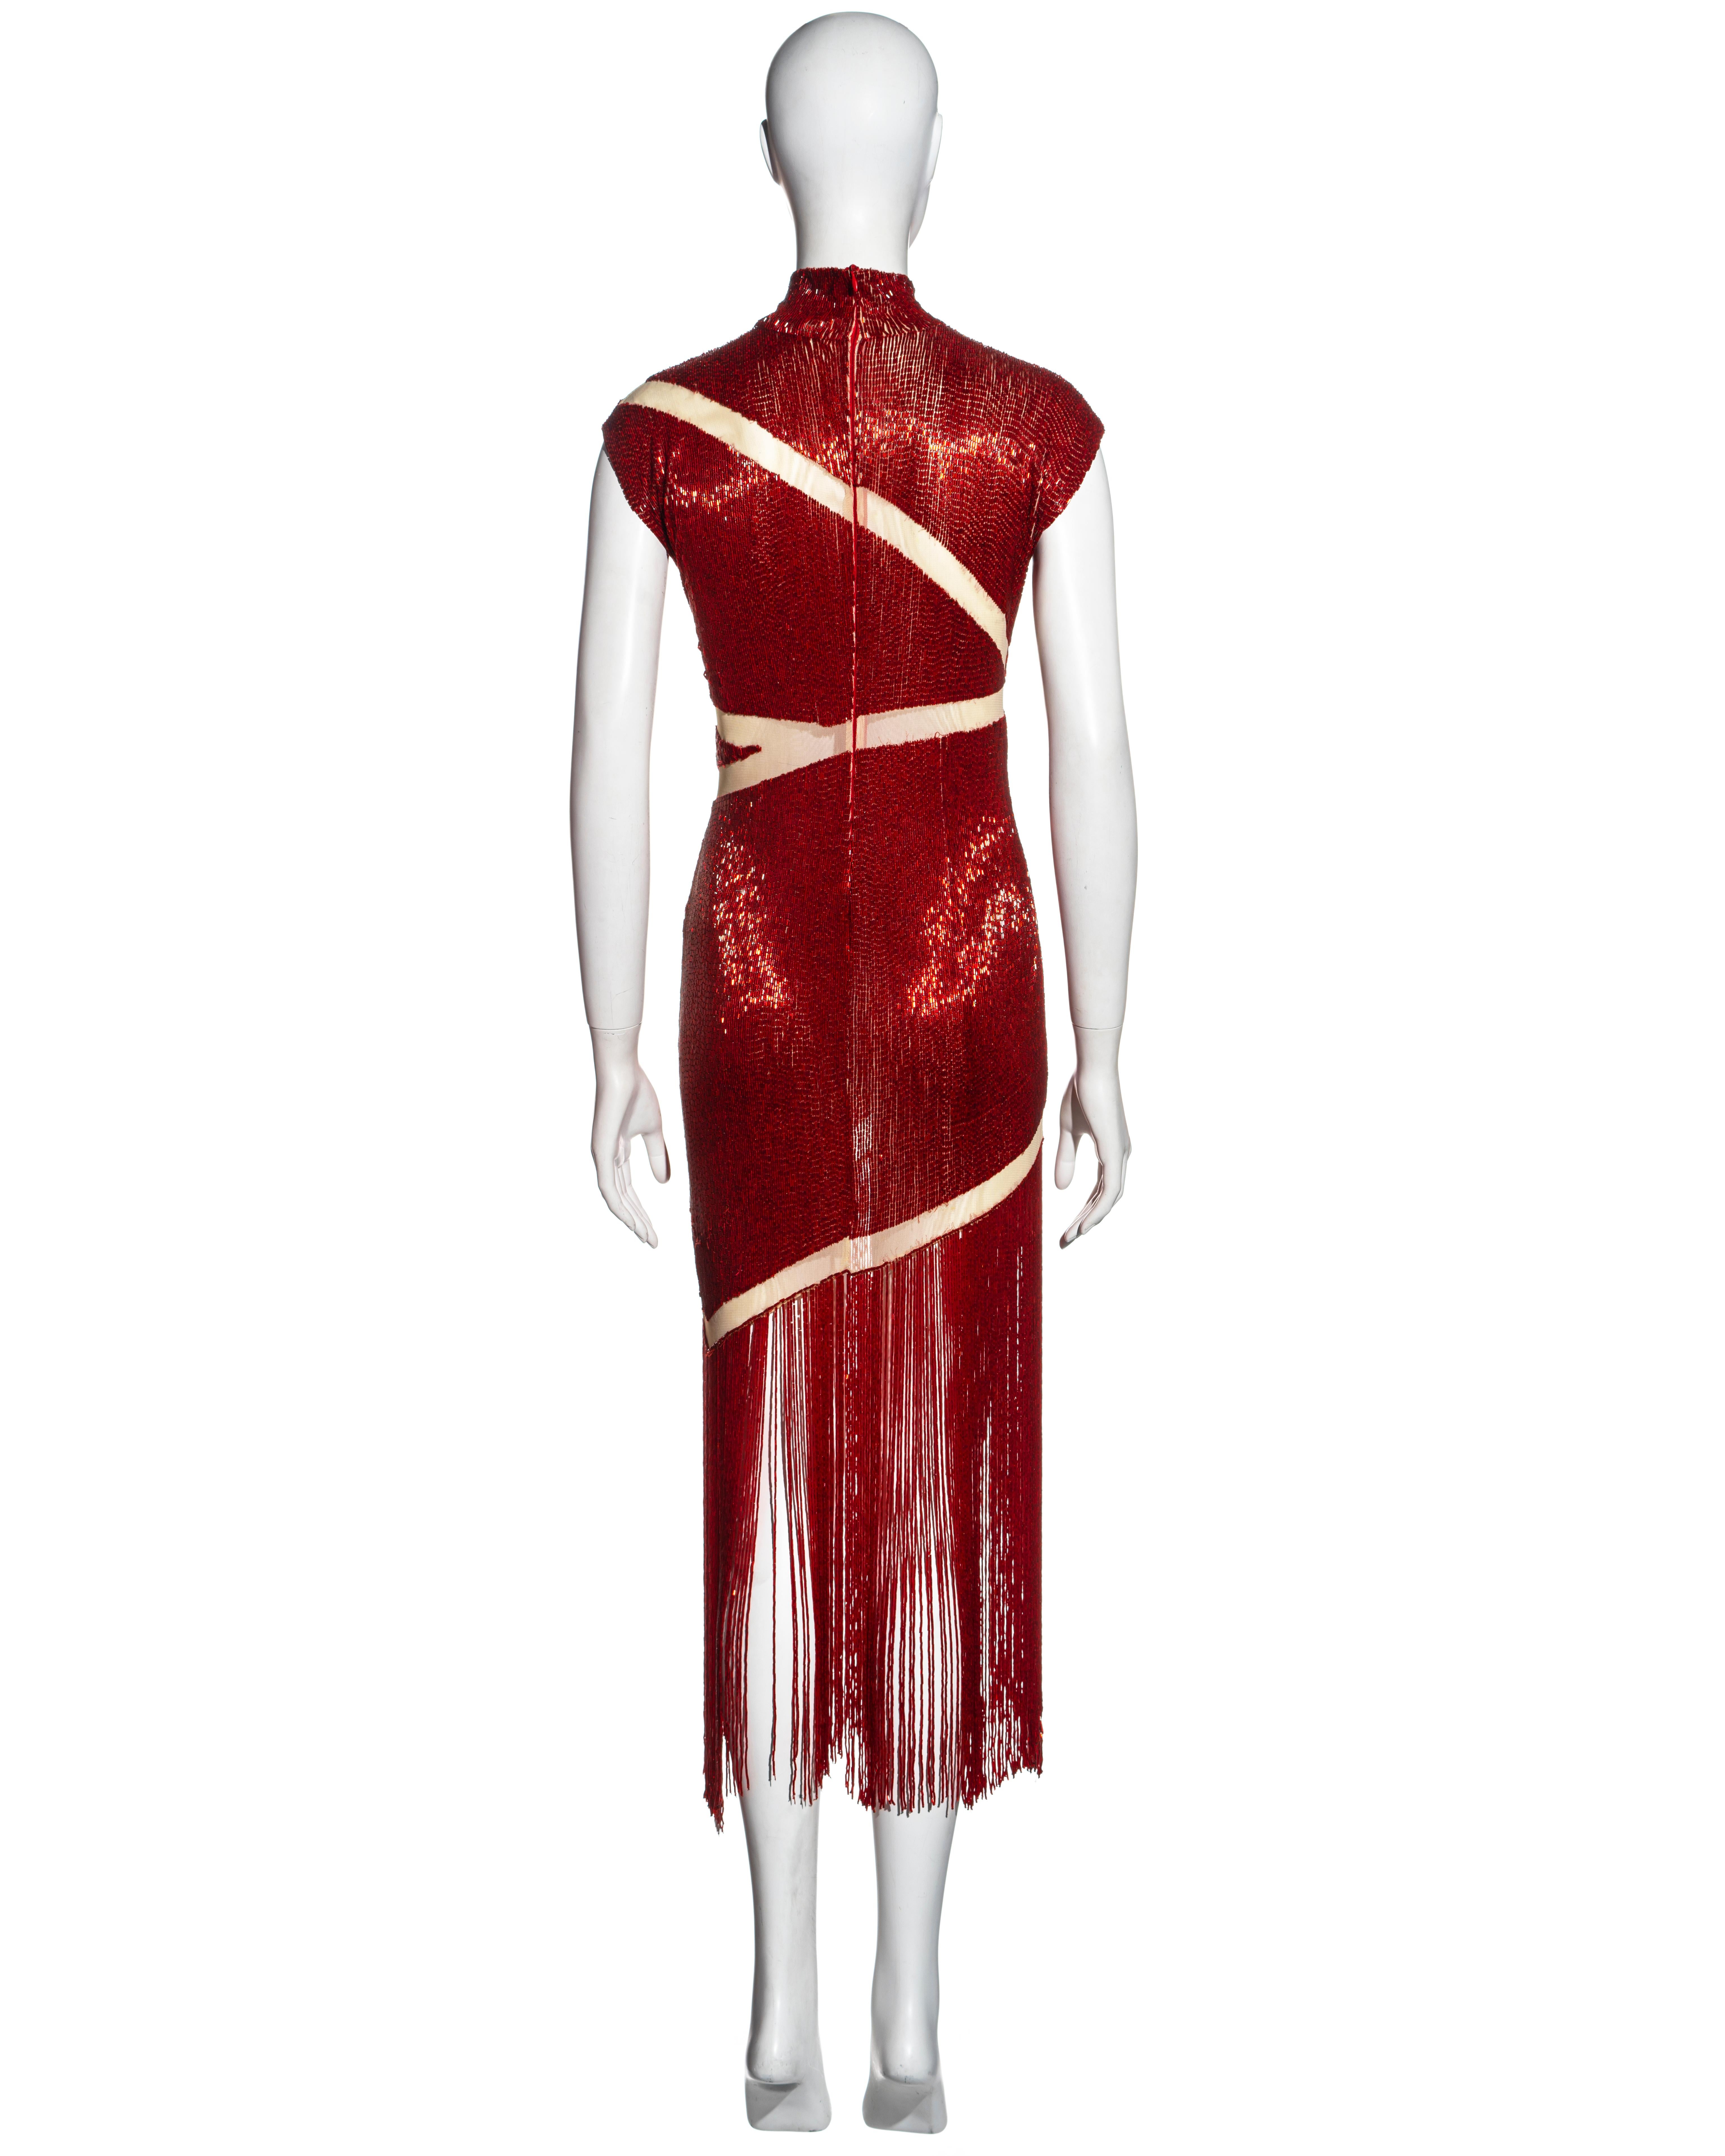 Alexander McQueen red beaded 'Joan' dress, fw 1998 2